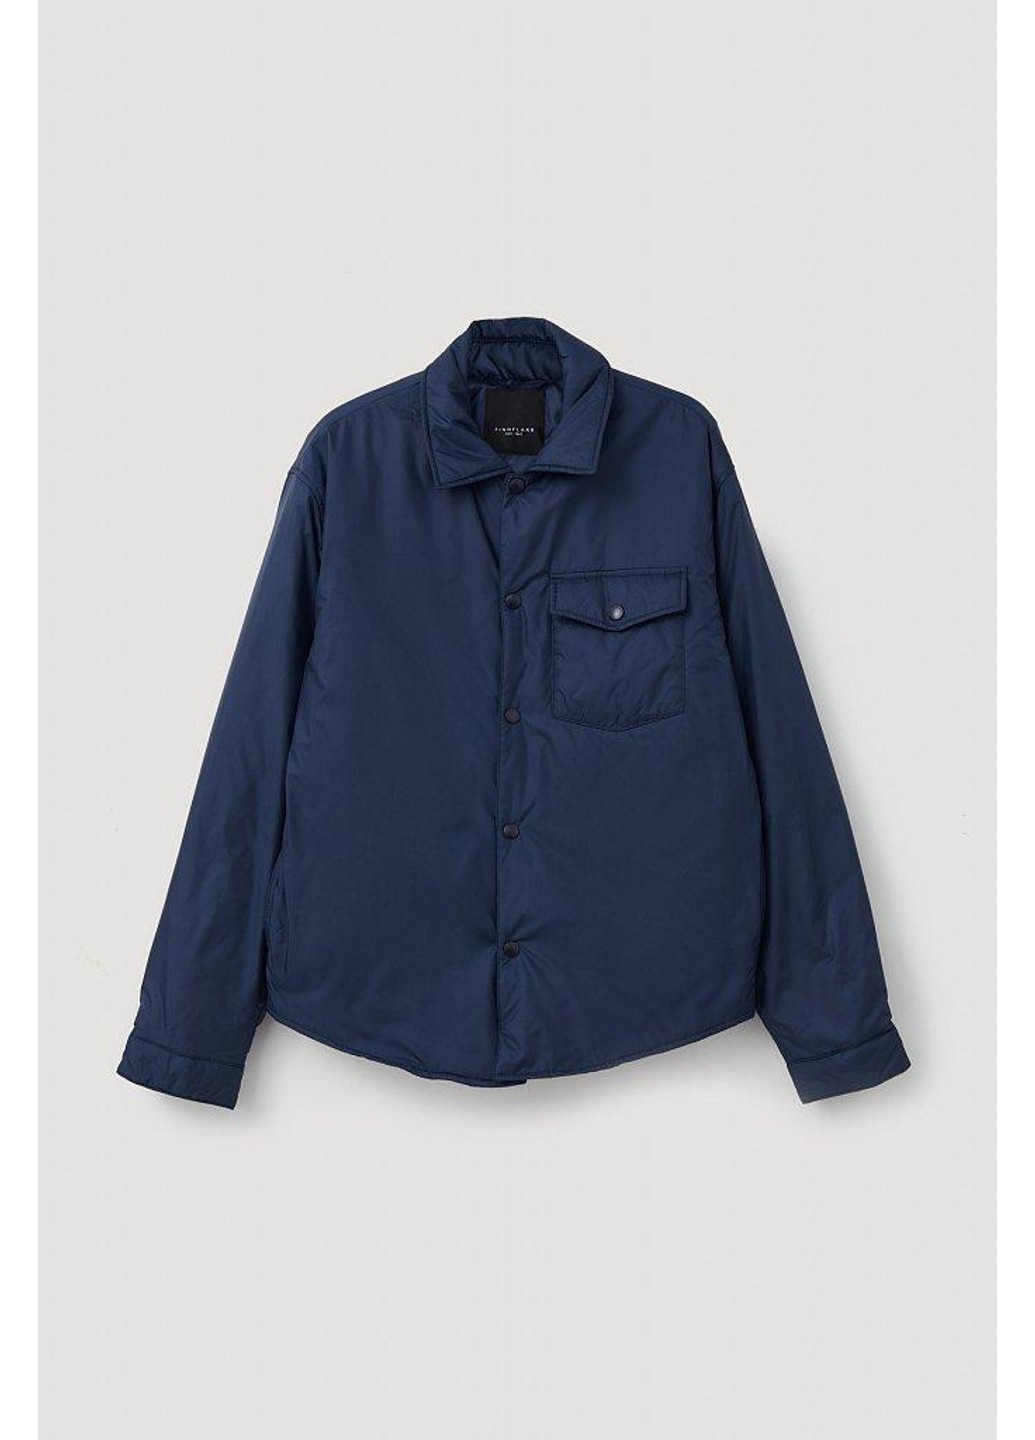 Синяя демисезонная куртка-рубашка fab21082-101 Finn Flare